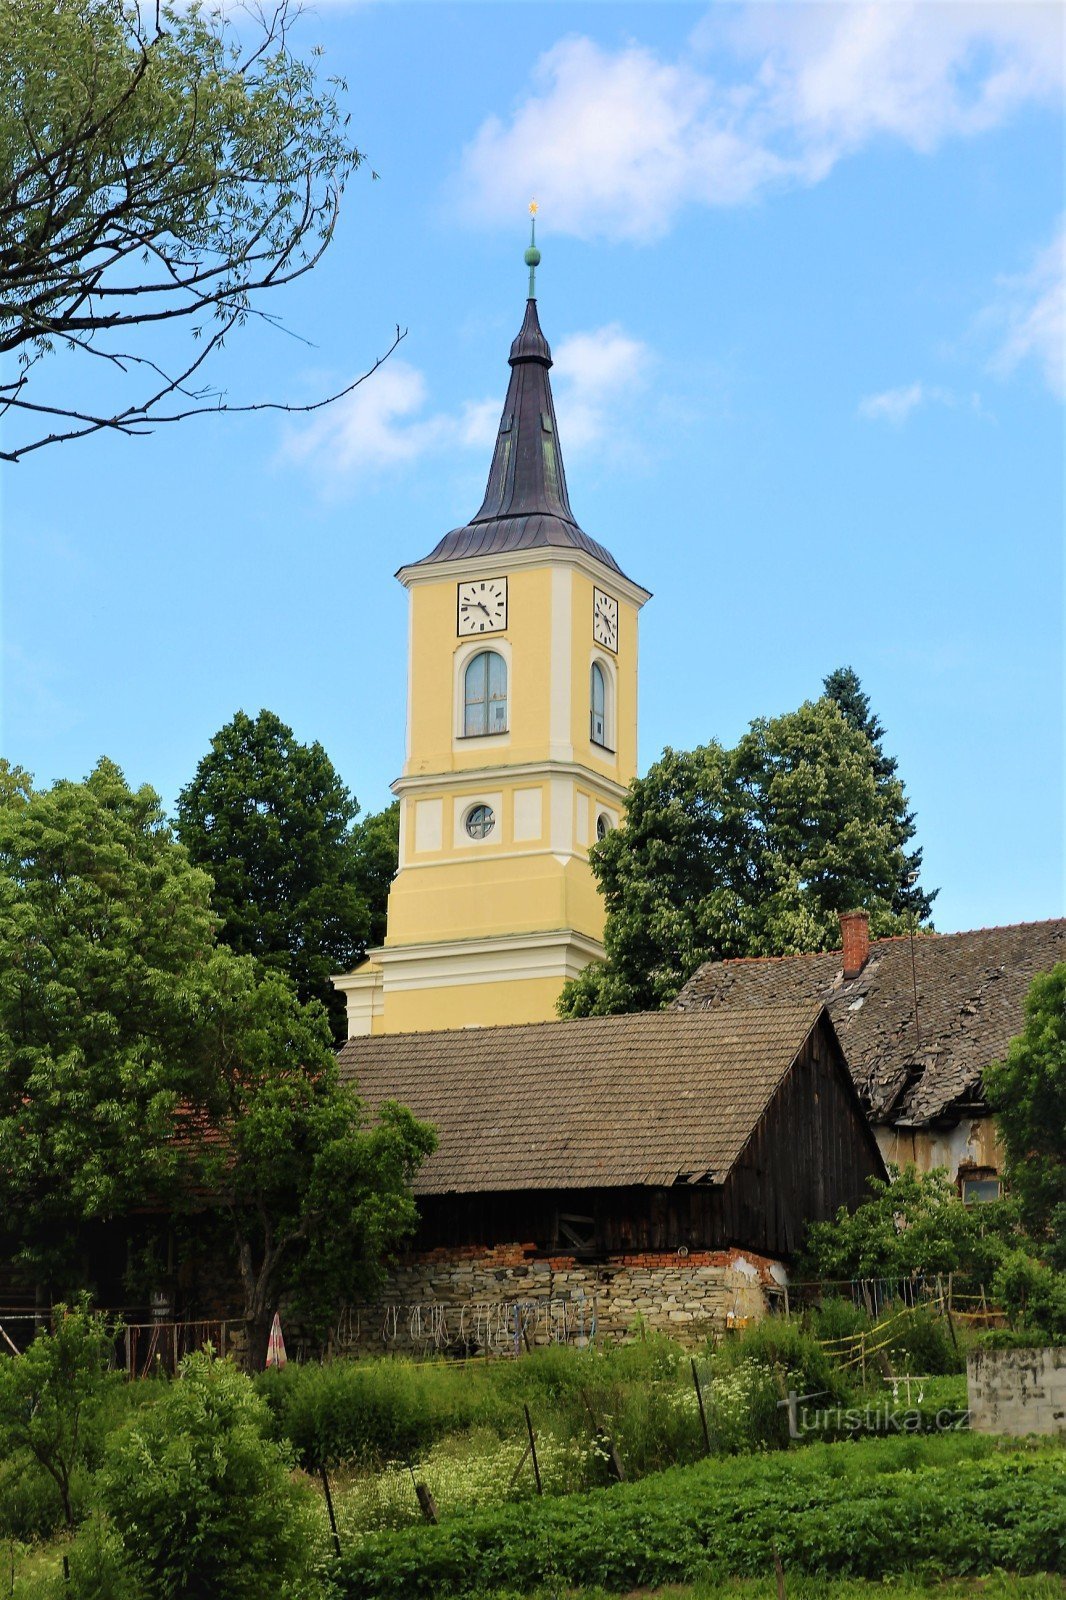 从霍多宁卡看到的教堂